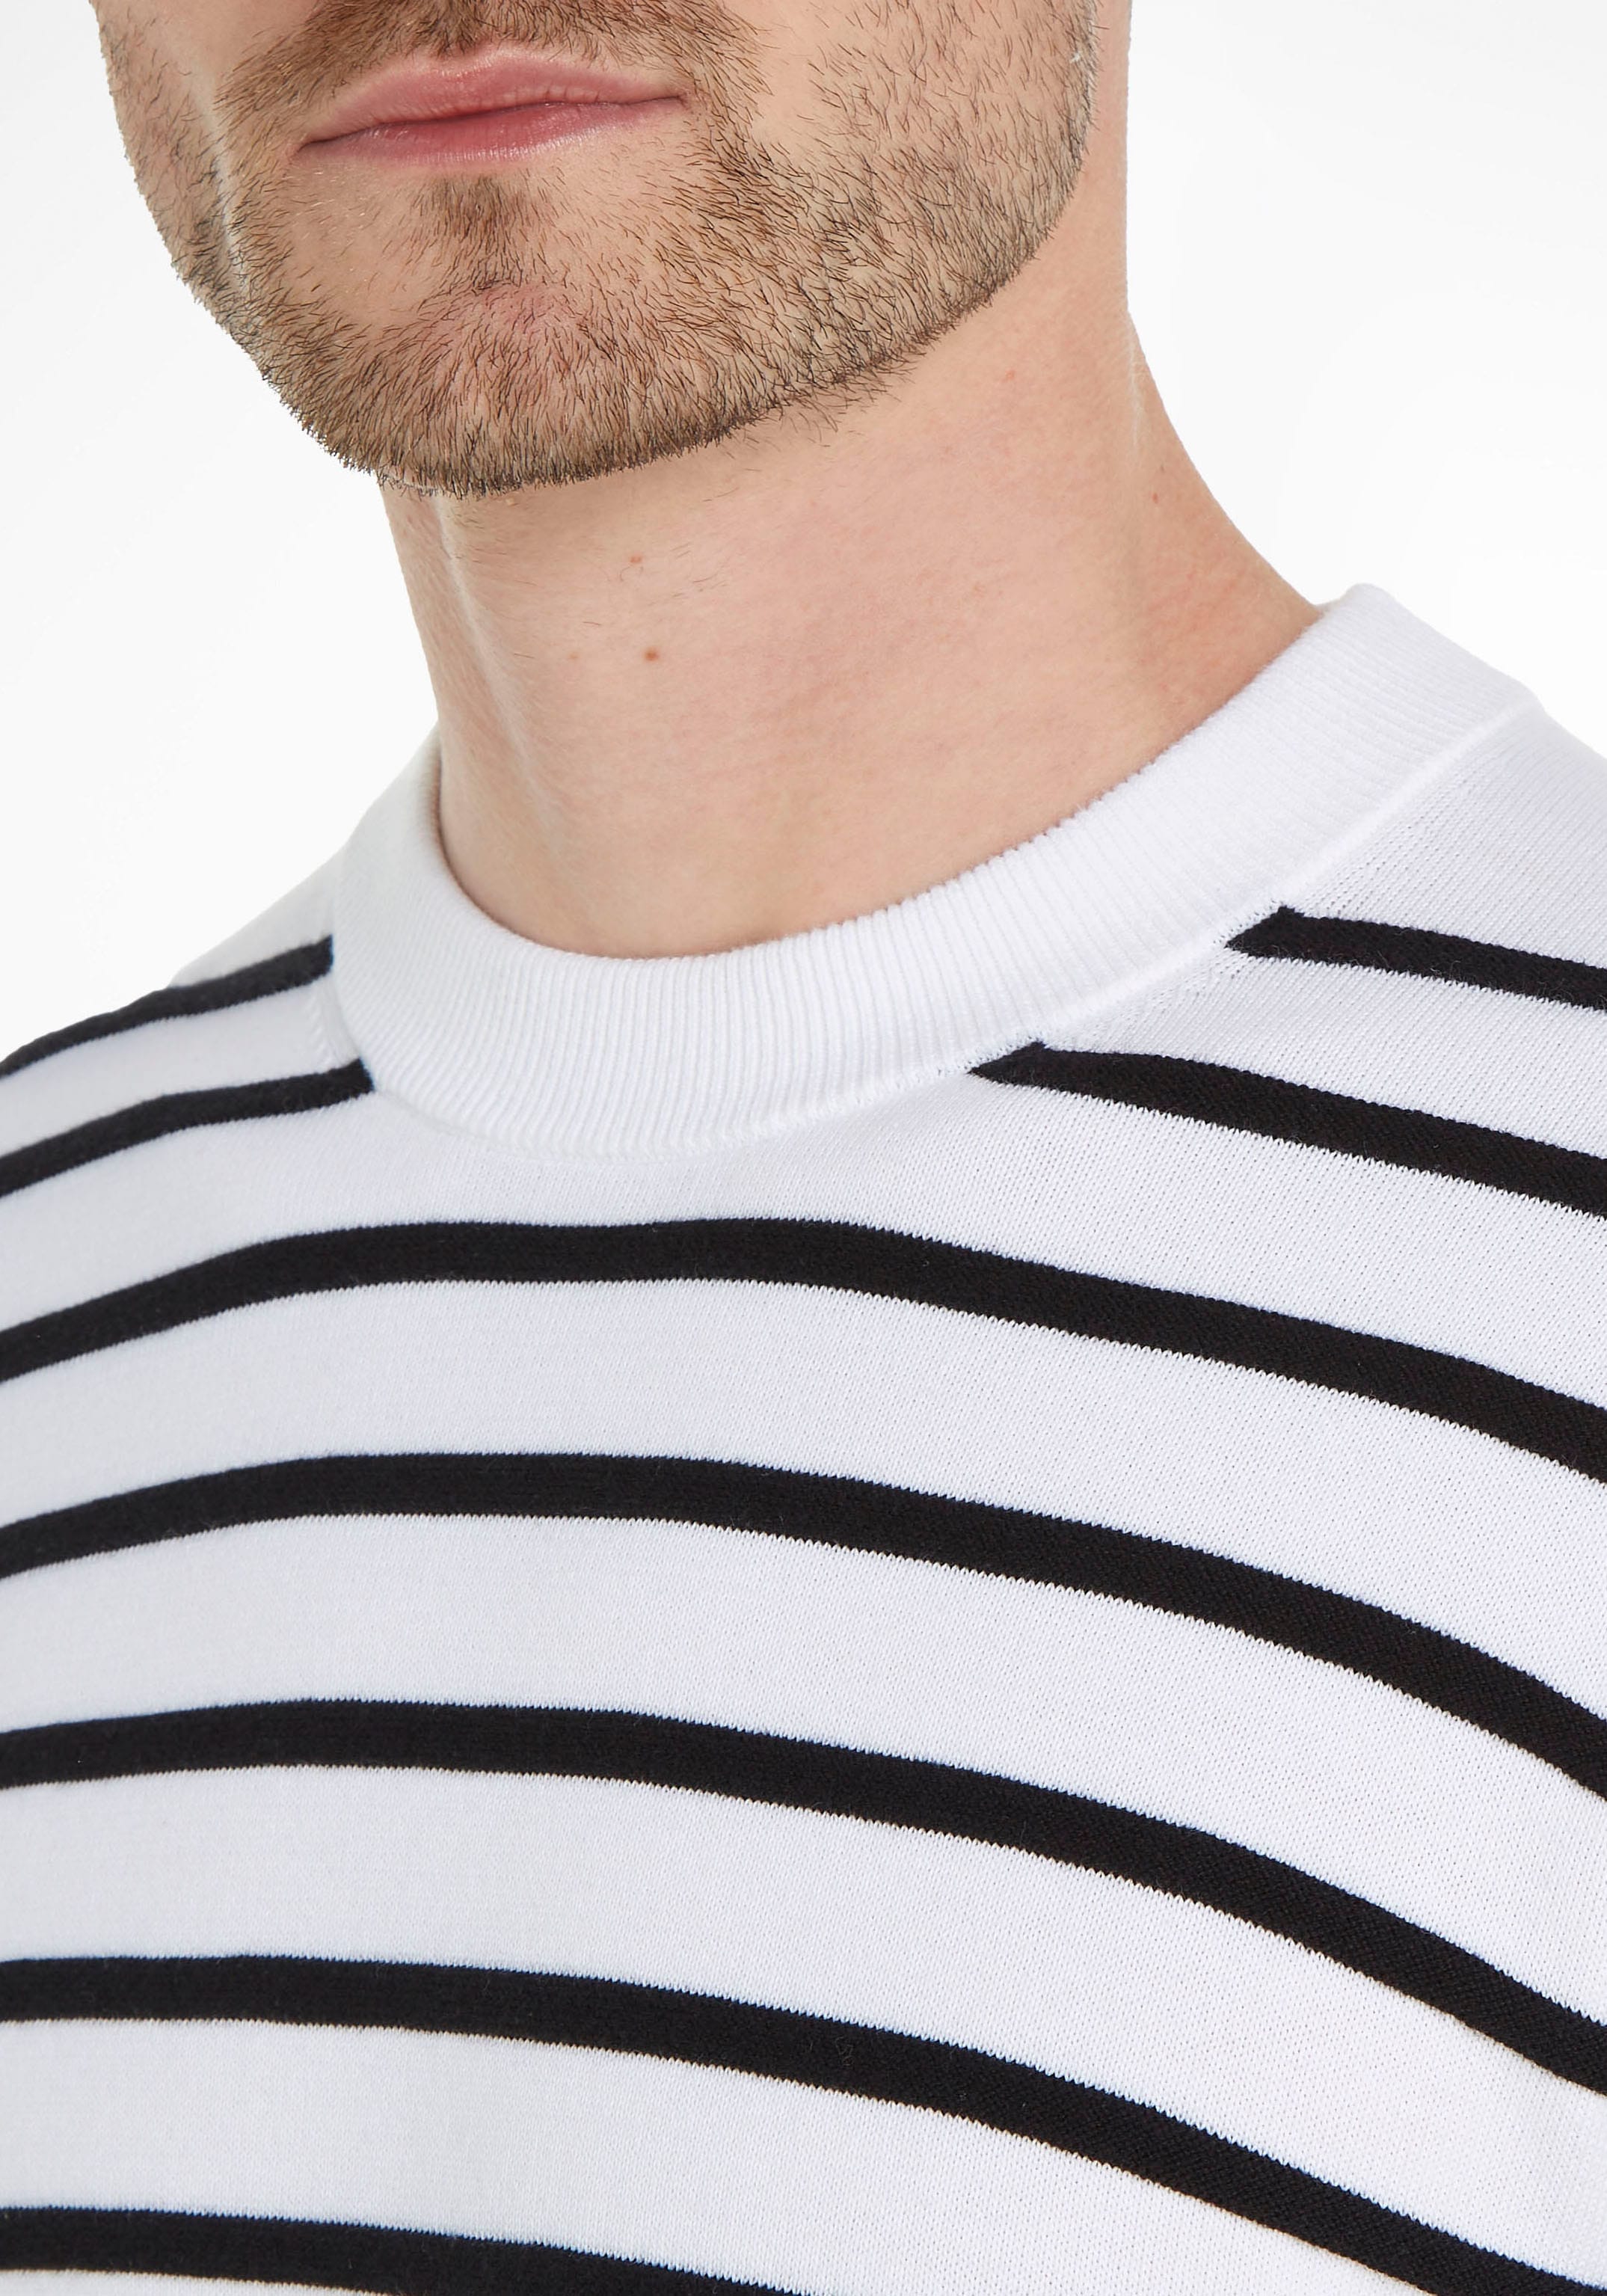 Calvin Klein Streifenpullover, mit Rippstrick-Details